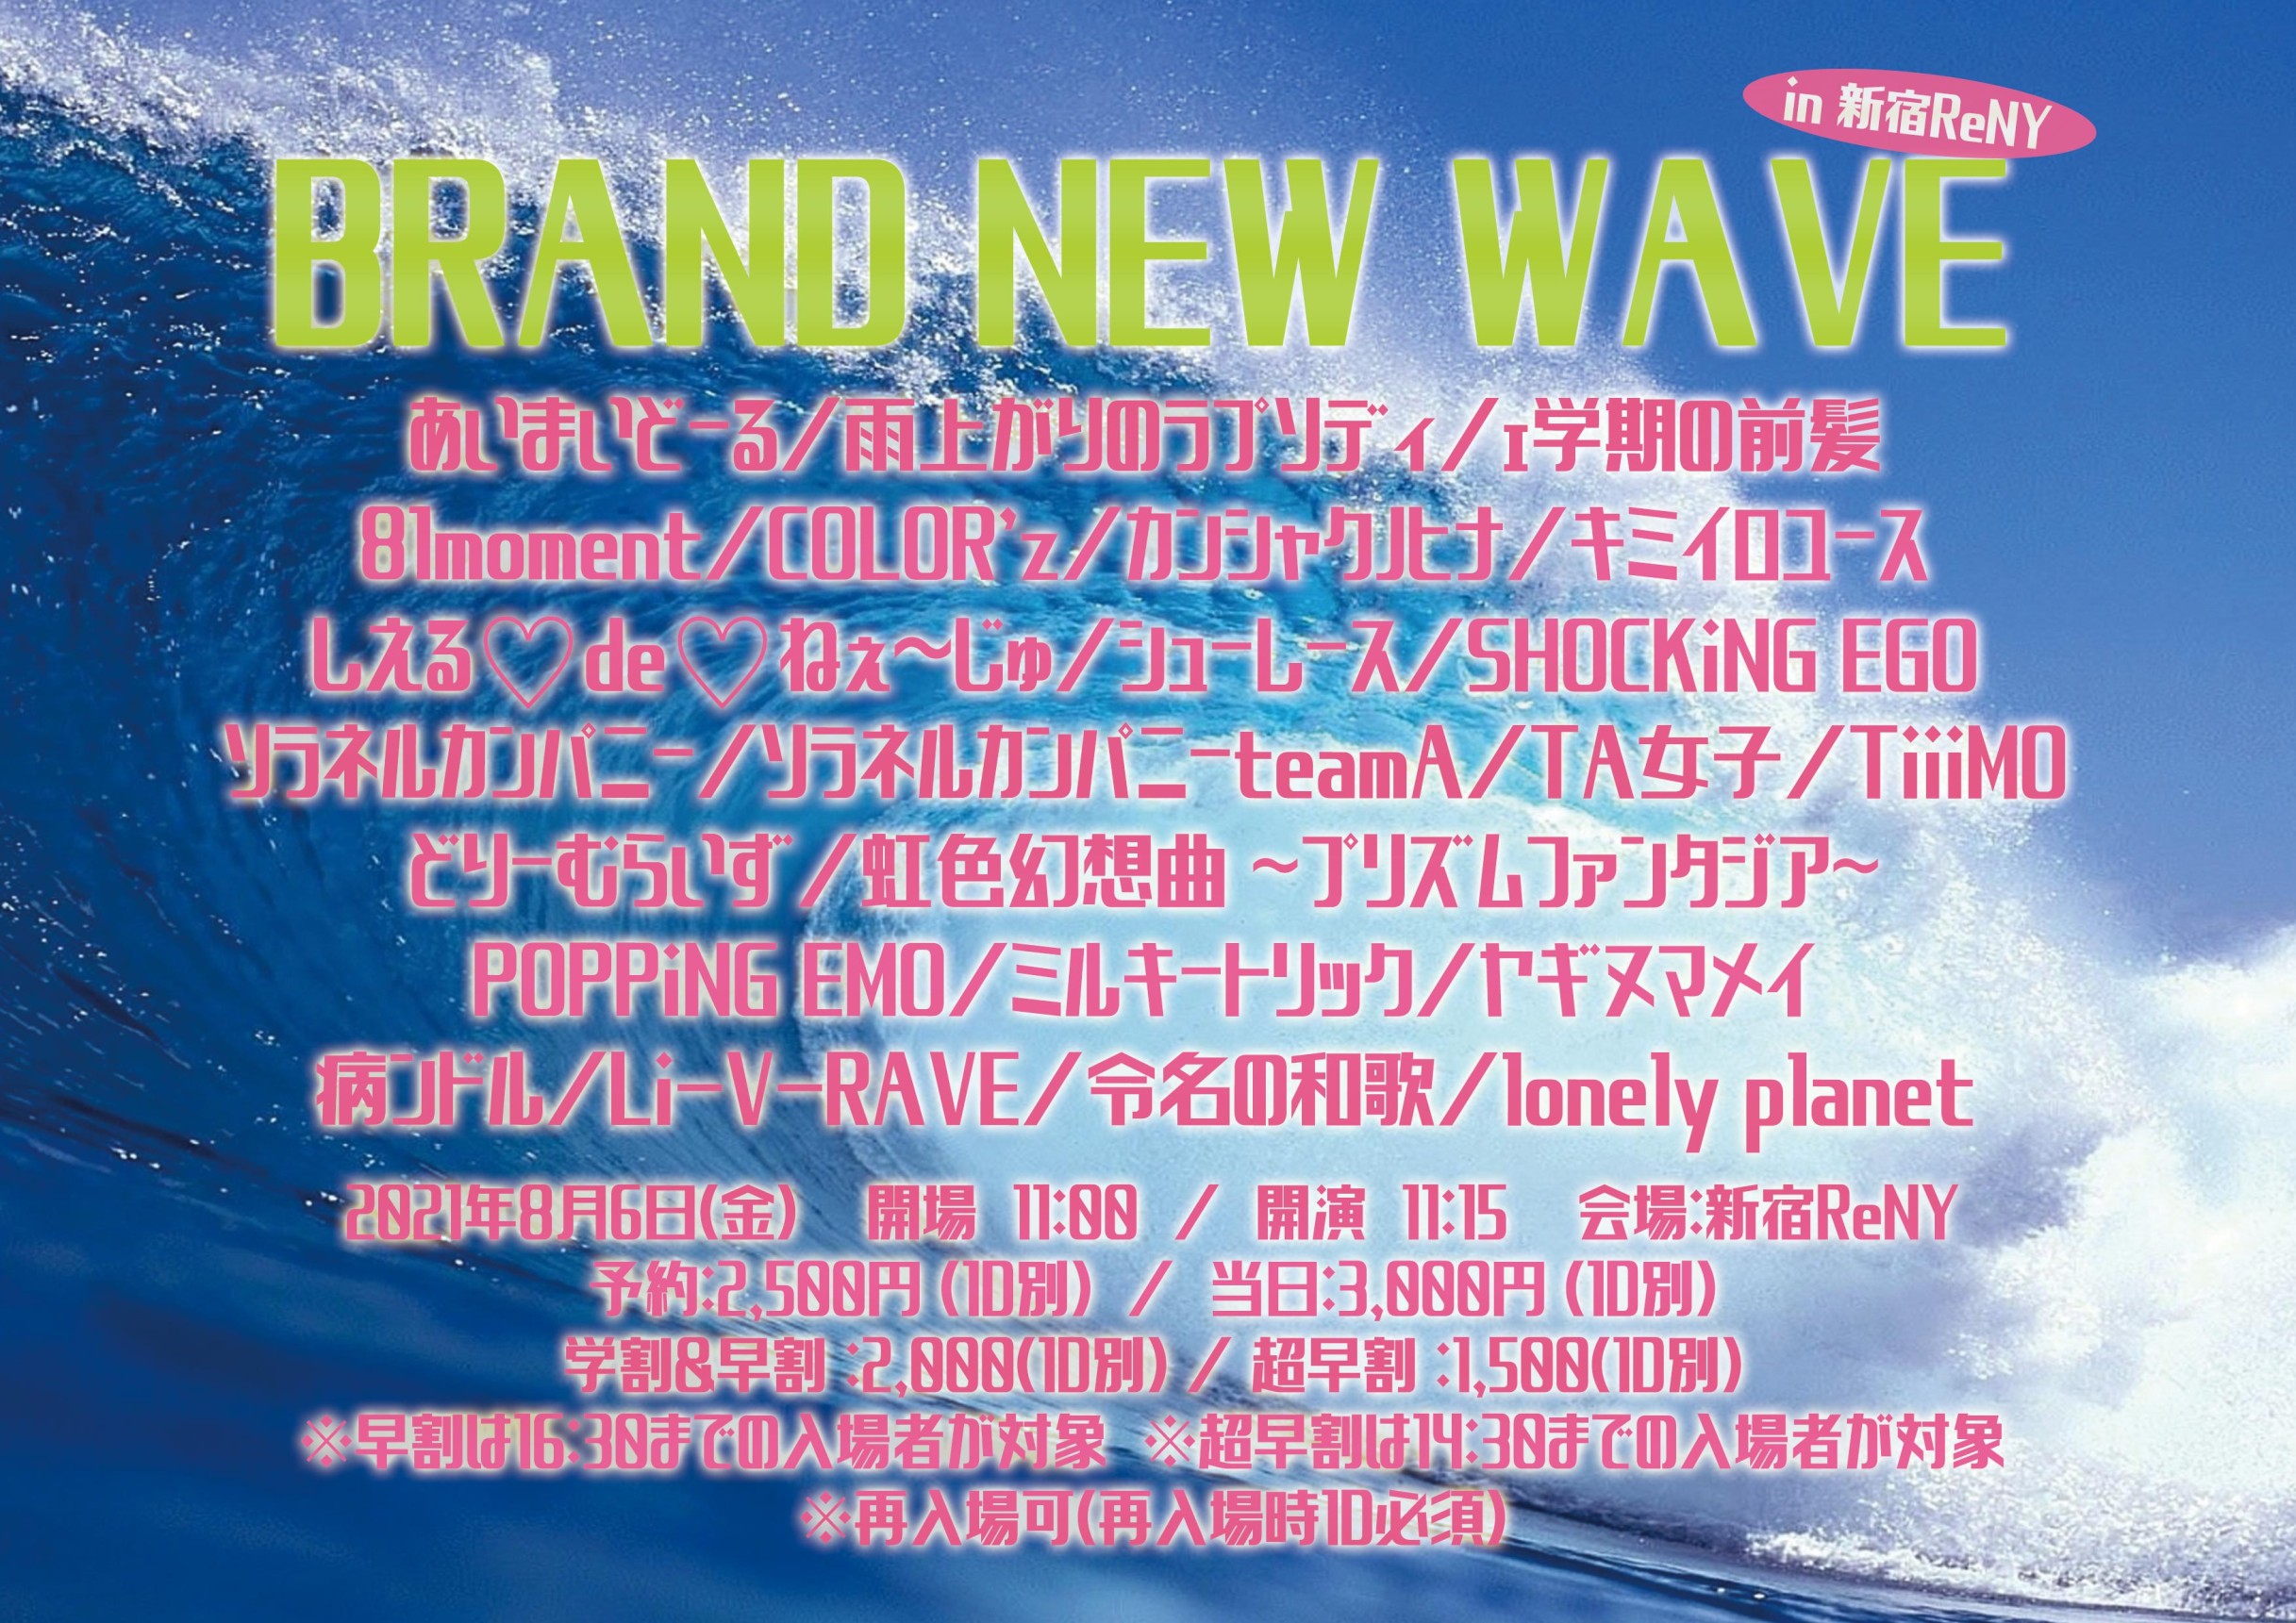 『BRAND NEW WAVE』 メインイメージ